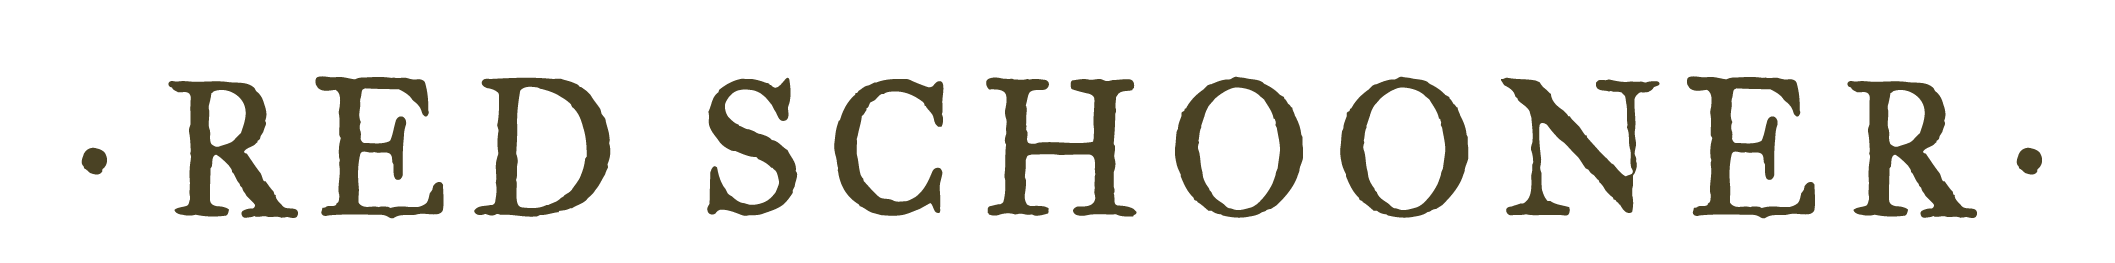 15RedSchooner-Logo-01.png